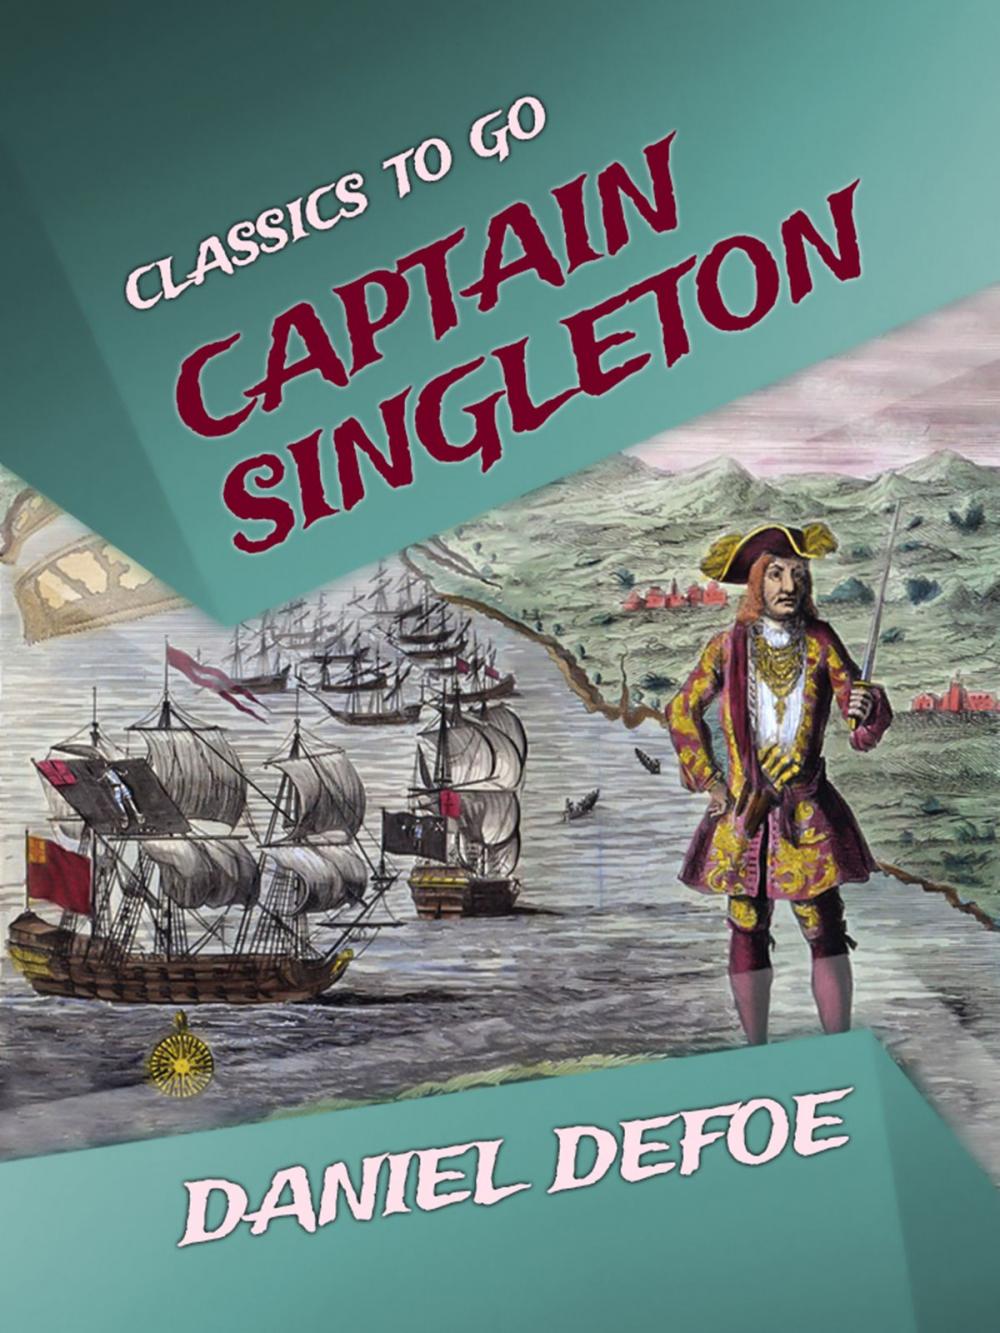 Big bigCover of Captain Singleton